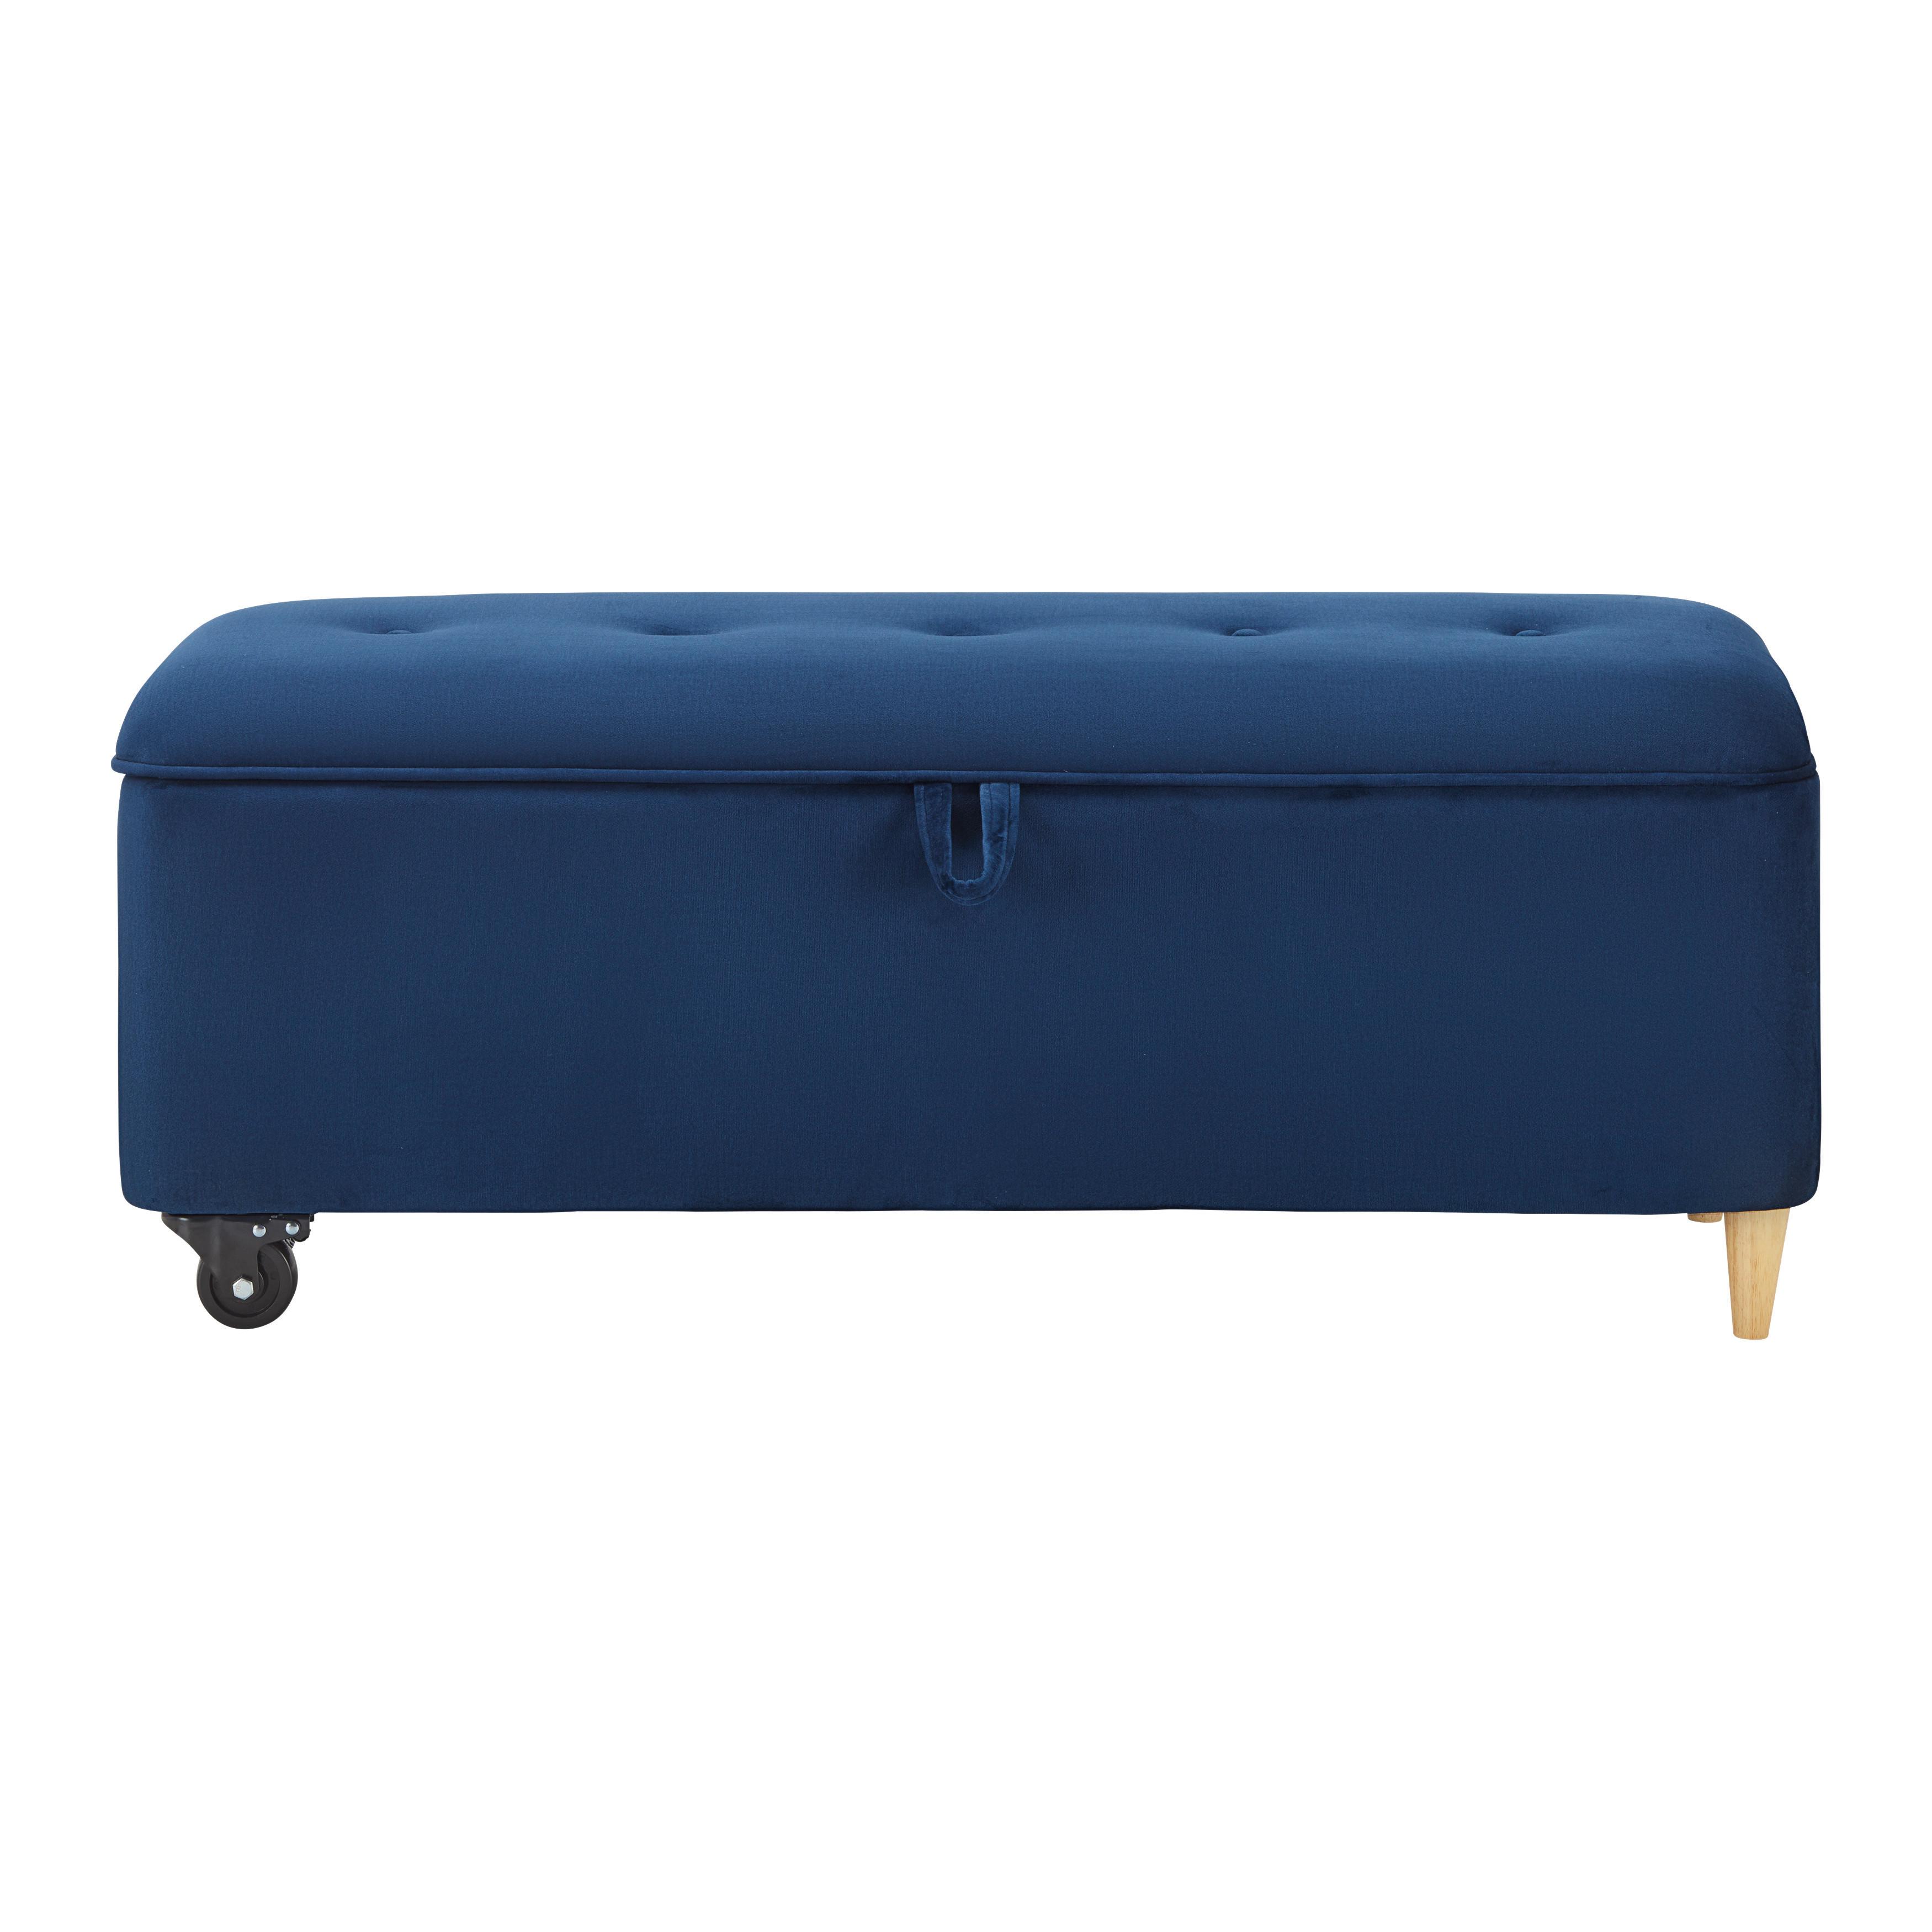 Sitzbank mit Stauraum, blau, "Ella", Samt - Blau/Schwarz, MODERN, Holz/Textil (124/48/43cm) - Bessagi Home